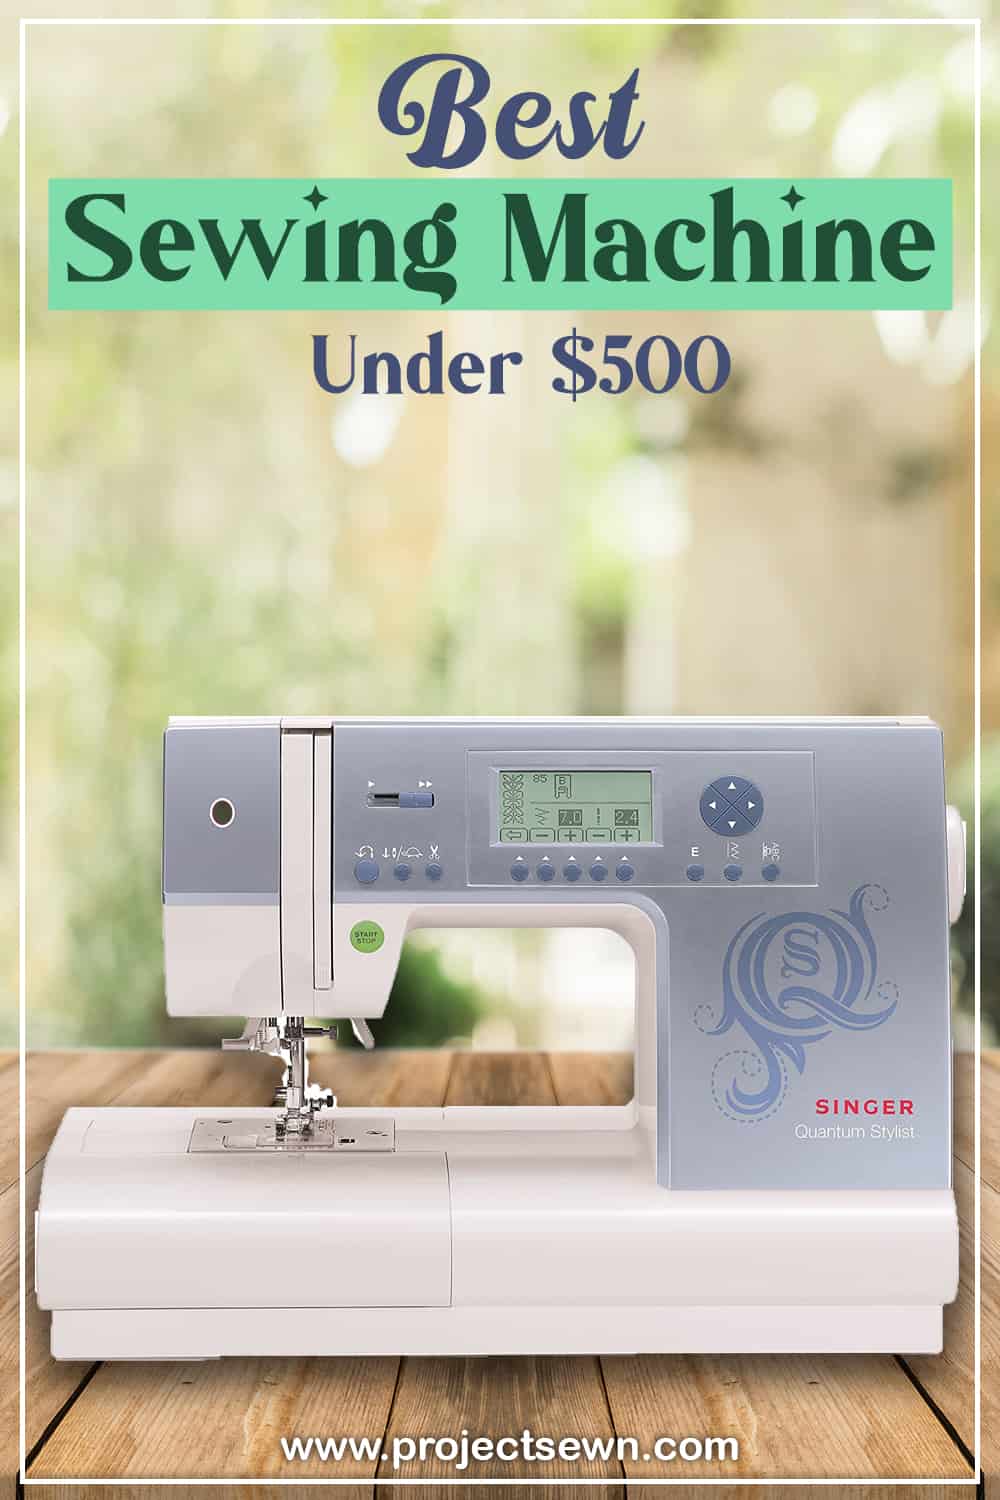 Best Sewing Machine Under $500